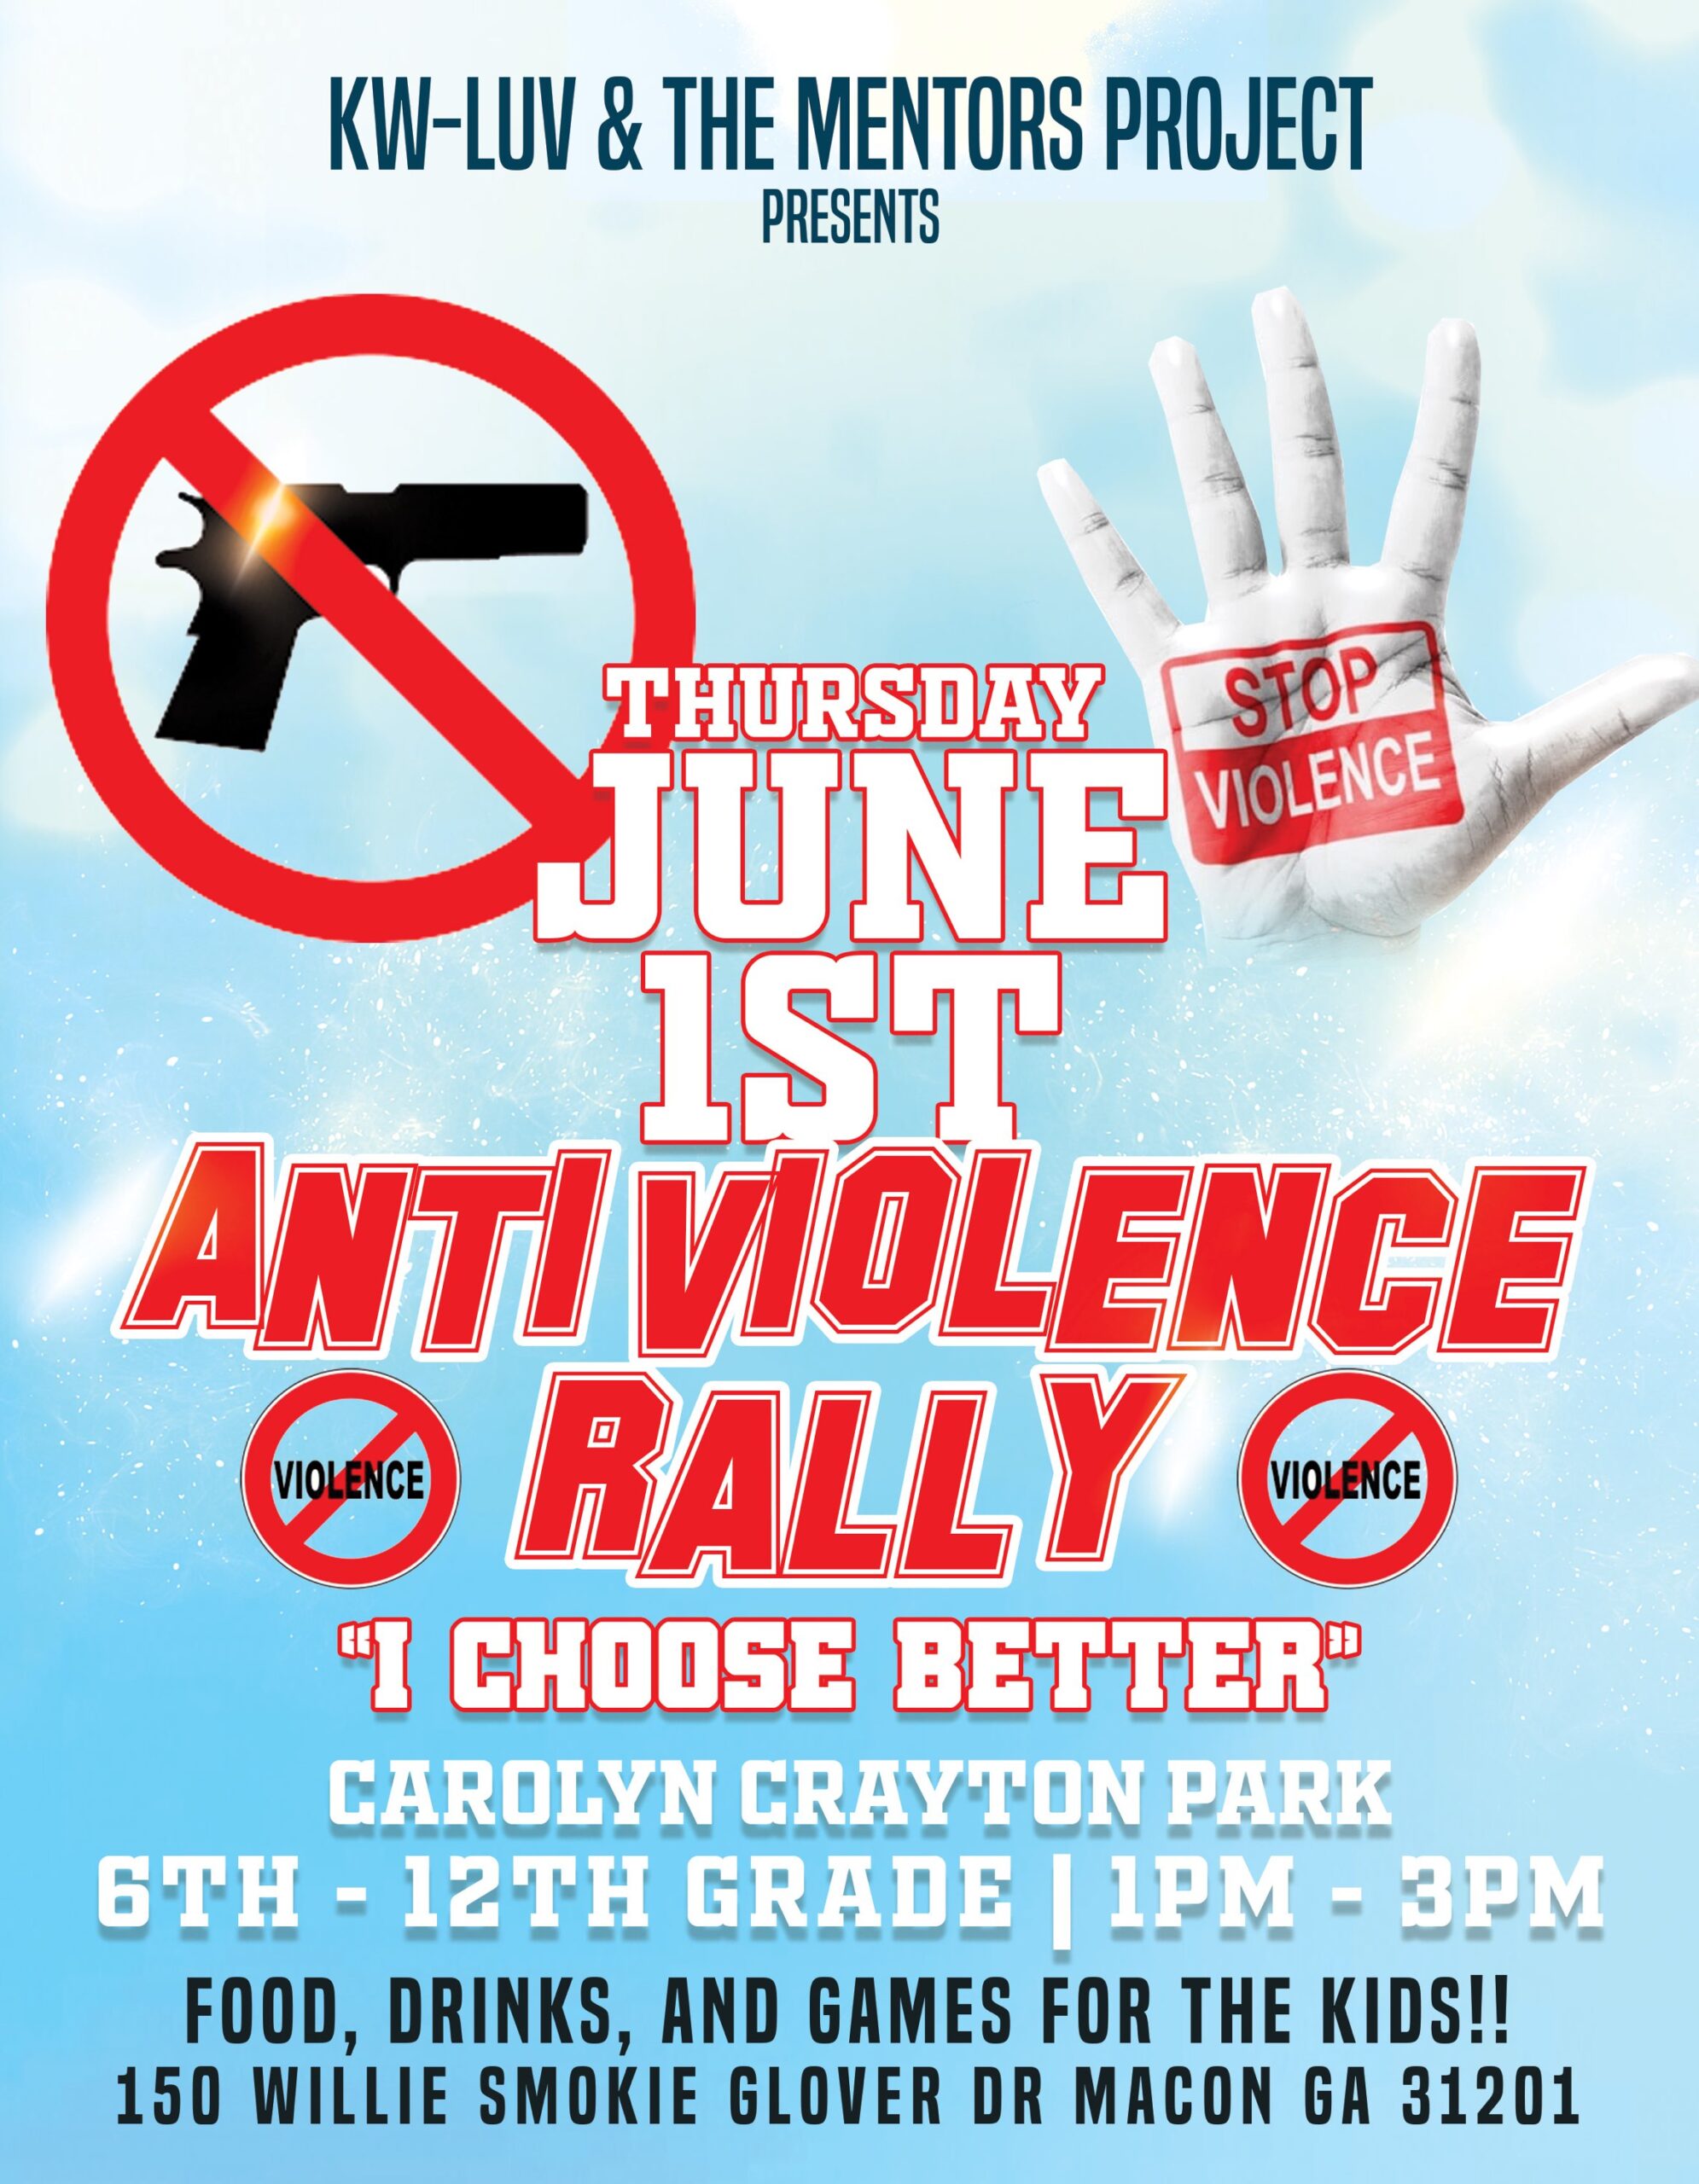 Anti-Violence Rally at Carolyn Crayton Park in Macon, GA